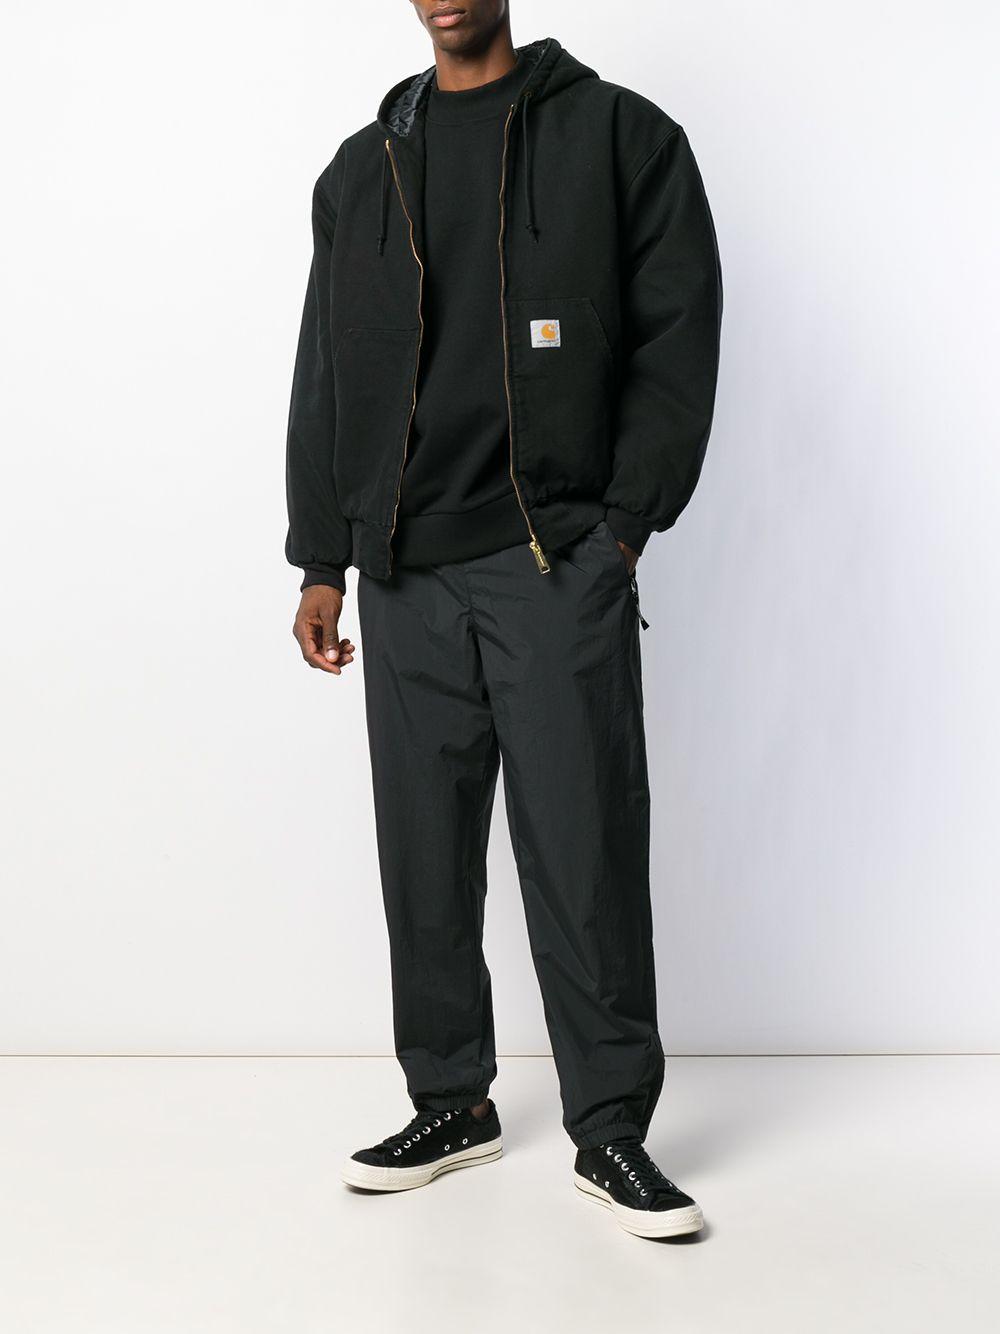 Carhartt WIP Cotton Og Active Jacket in Black for Men - Lyst